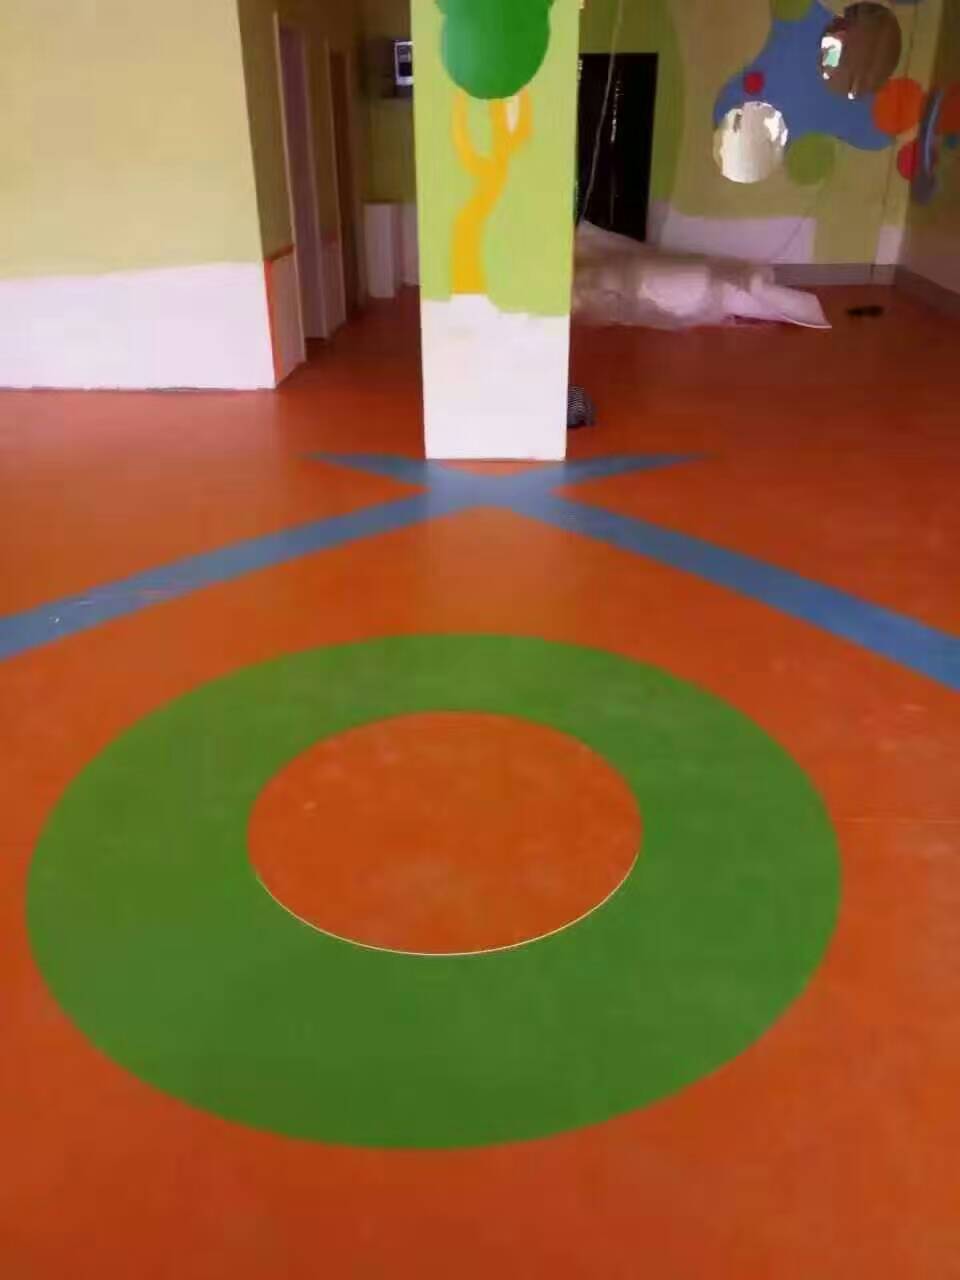 悬浮地板|幼儿园悬浮地板施工悬浮地板|幼儿园悬浮地板施工